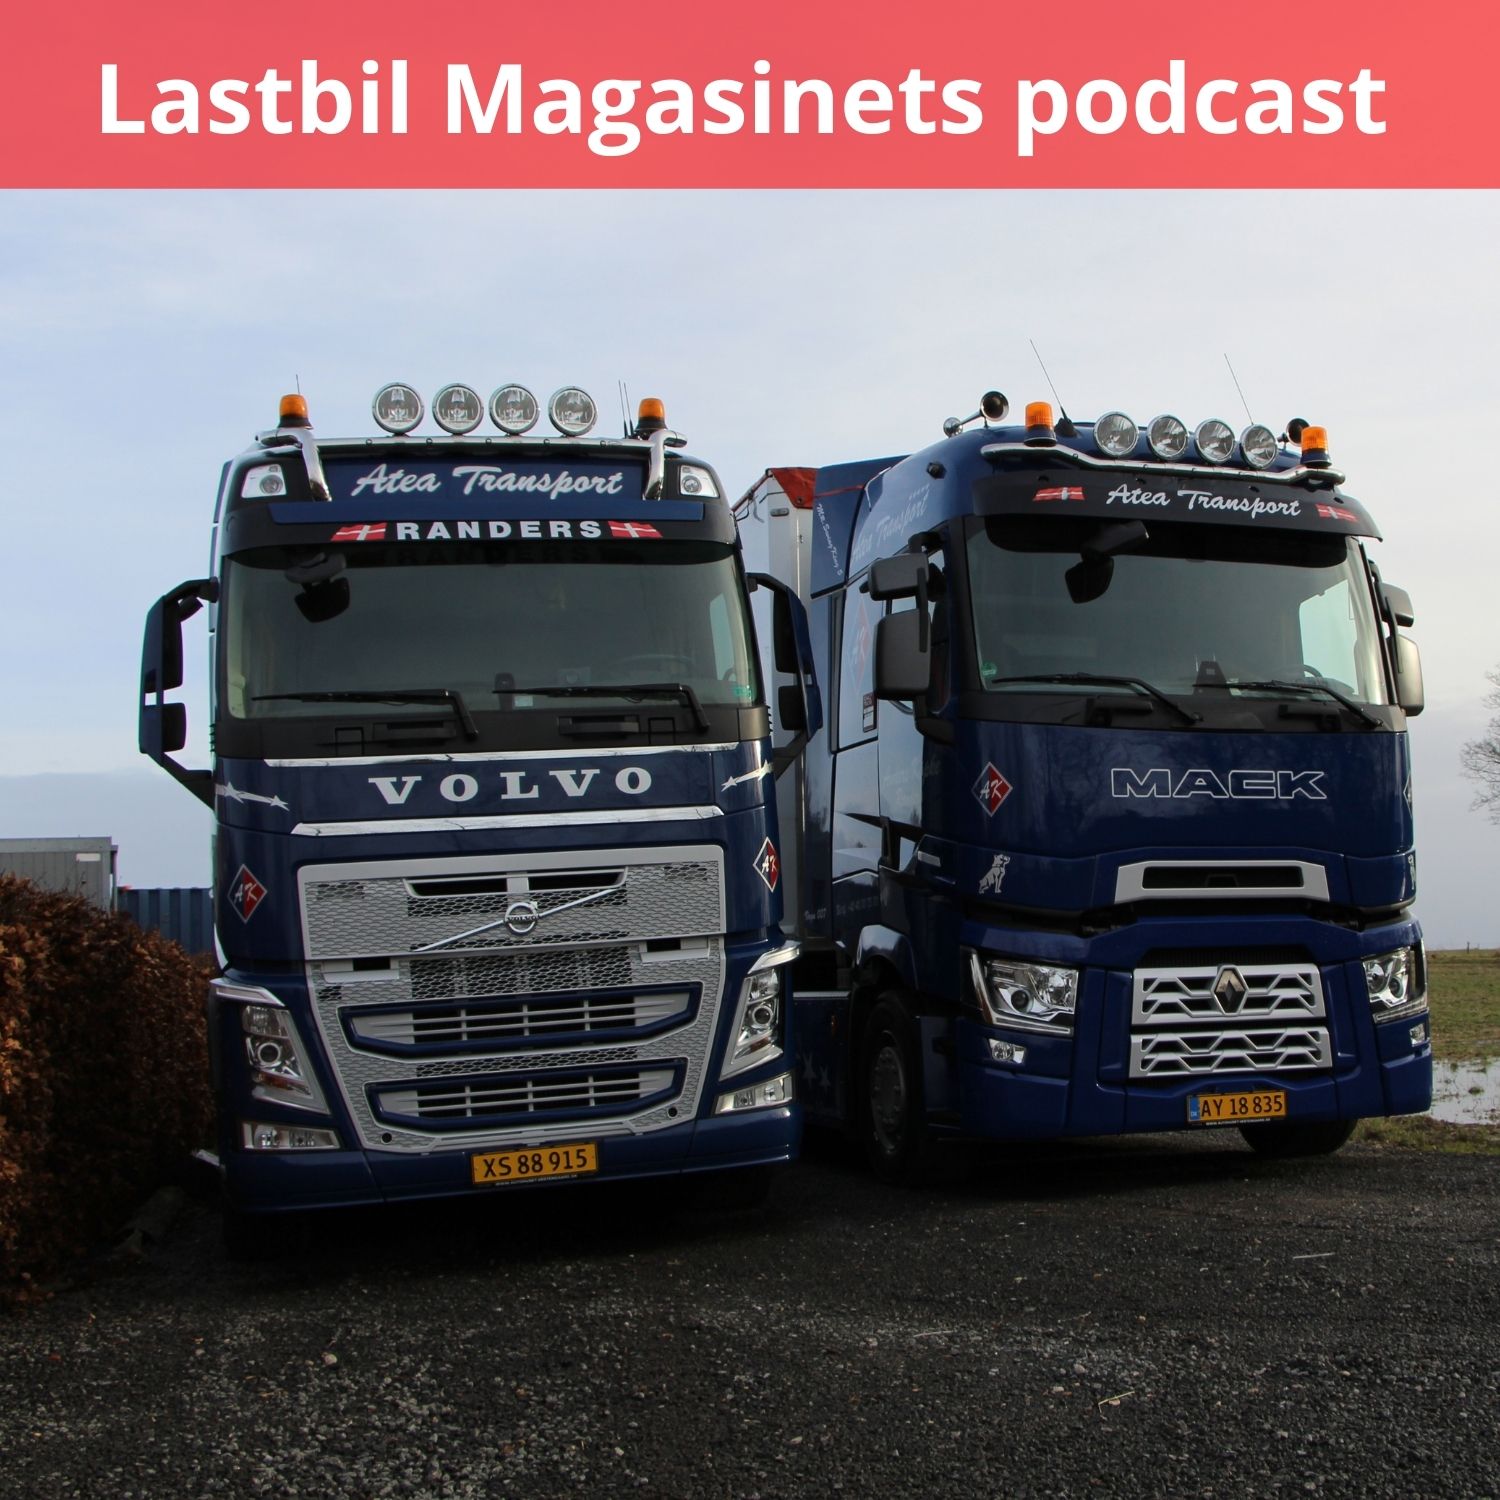 Artwork for podcast Lastbil Magasinet